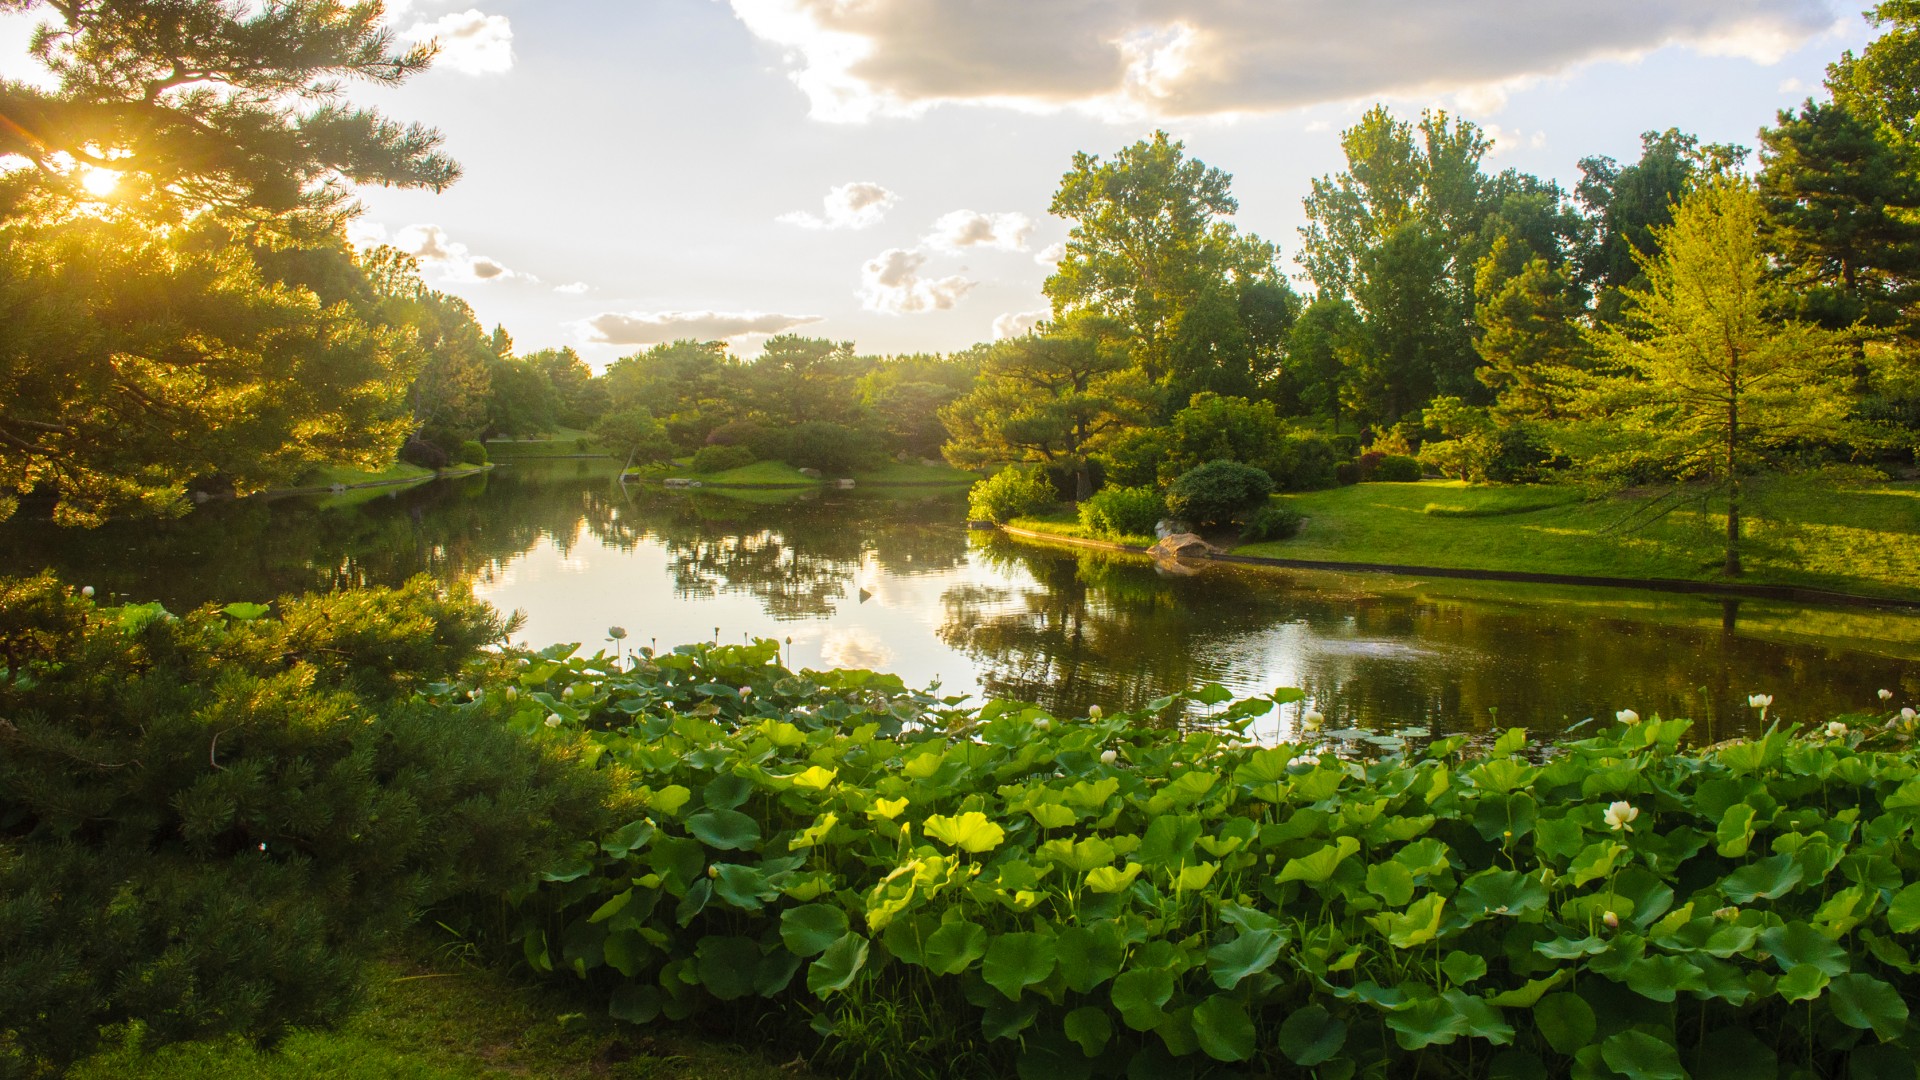 美国,密苏里植物园,公园,池塘,绿色自然风景壁纸